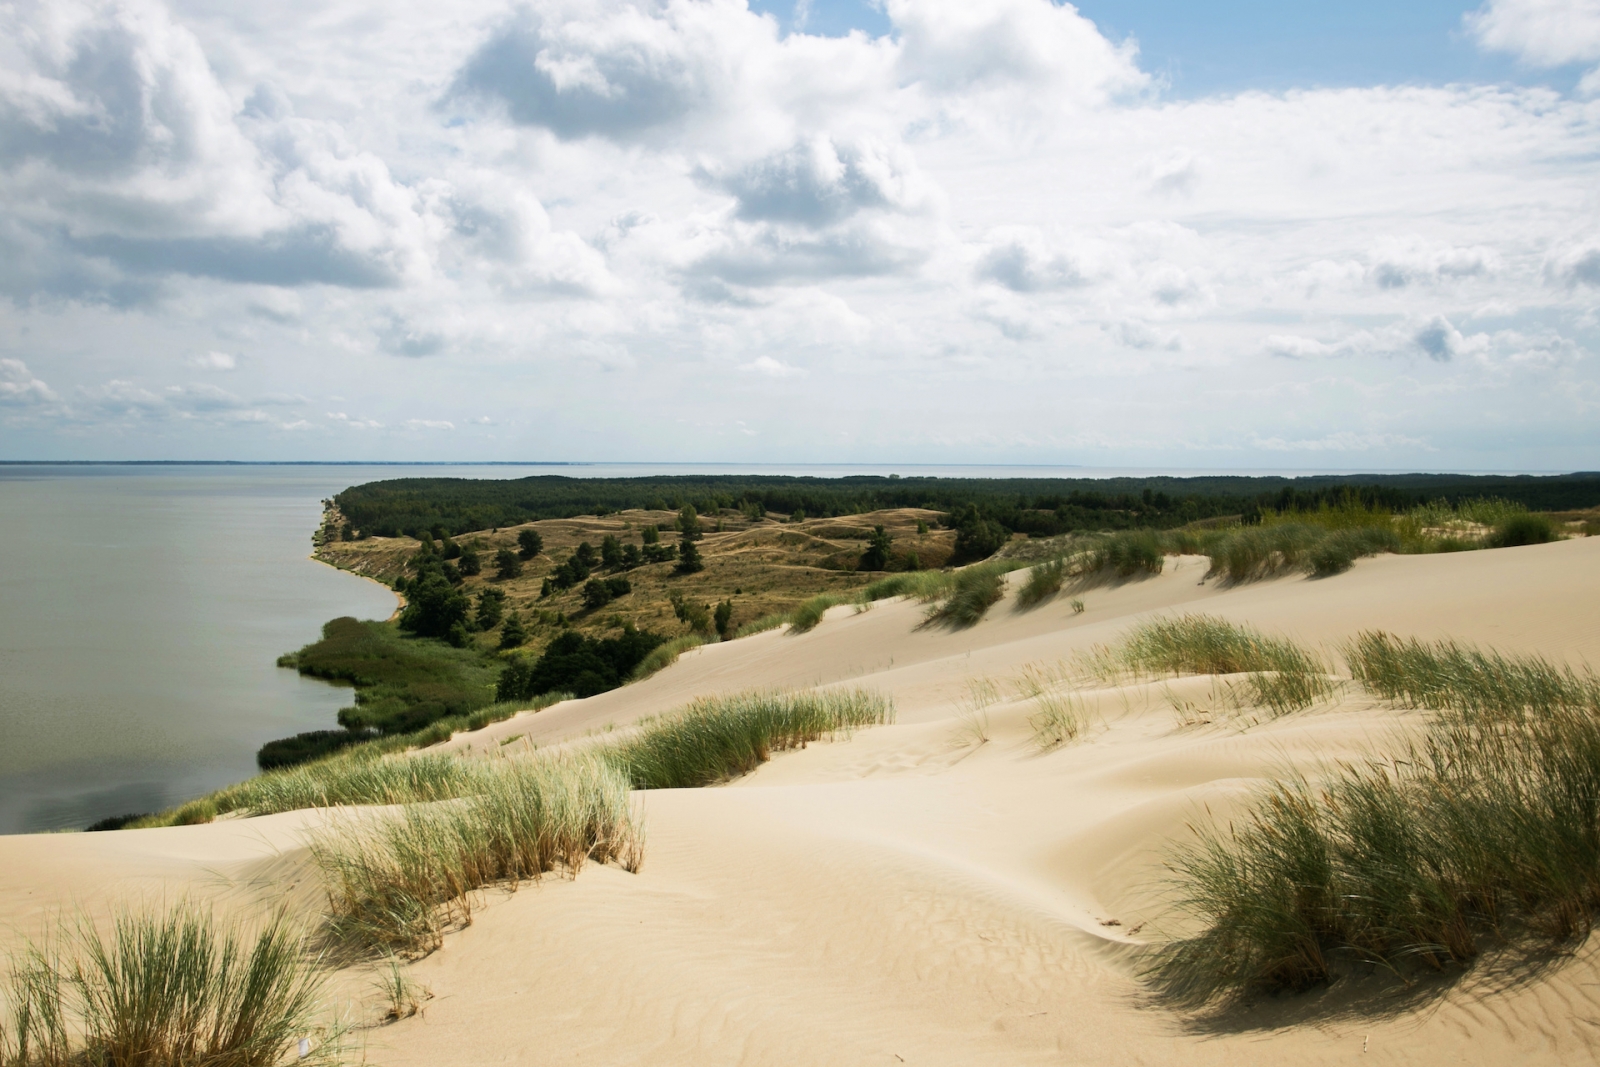 Фон песчаных дюн Куршской косы.  Путешествие по ландшафту Литвы.  Утес над видом на Балтийское море